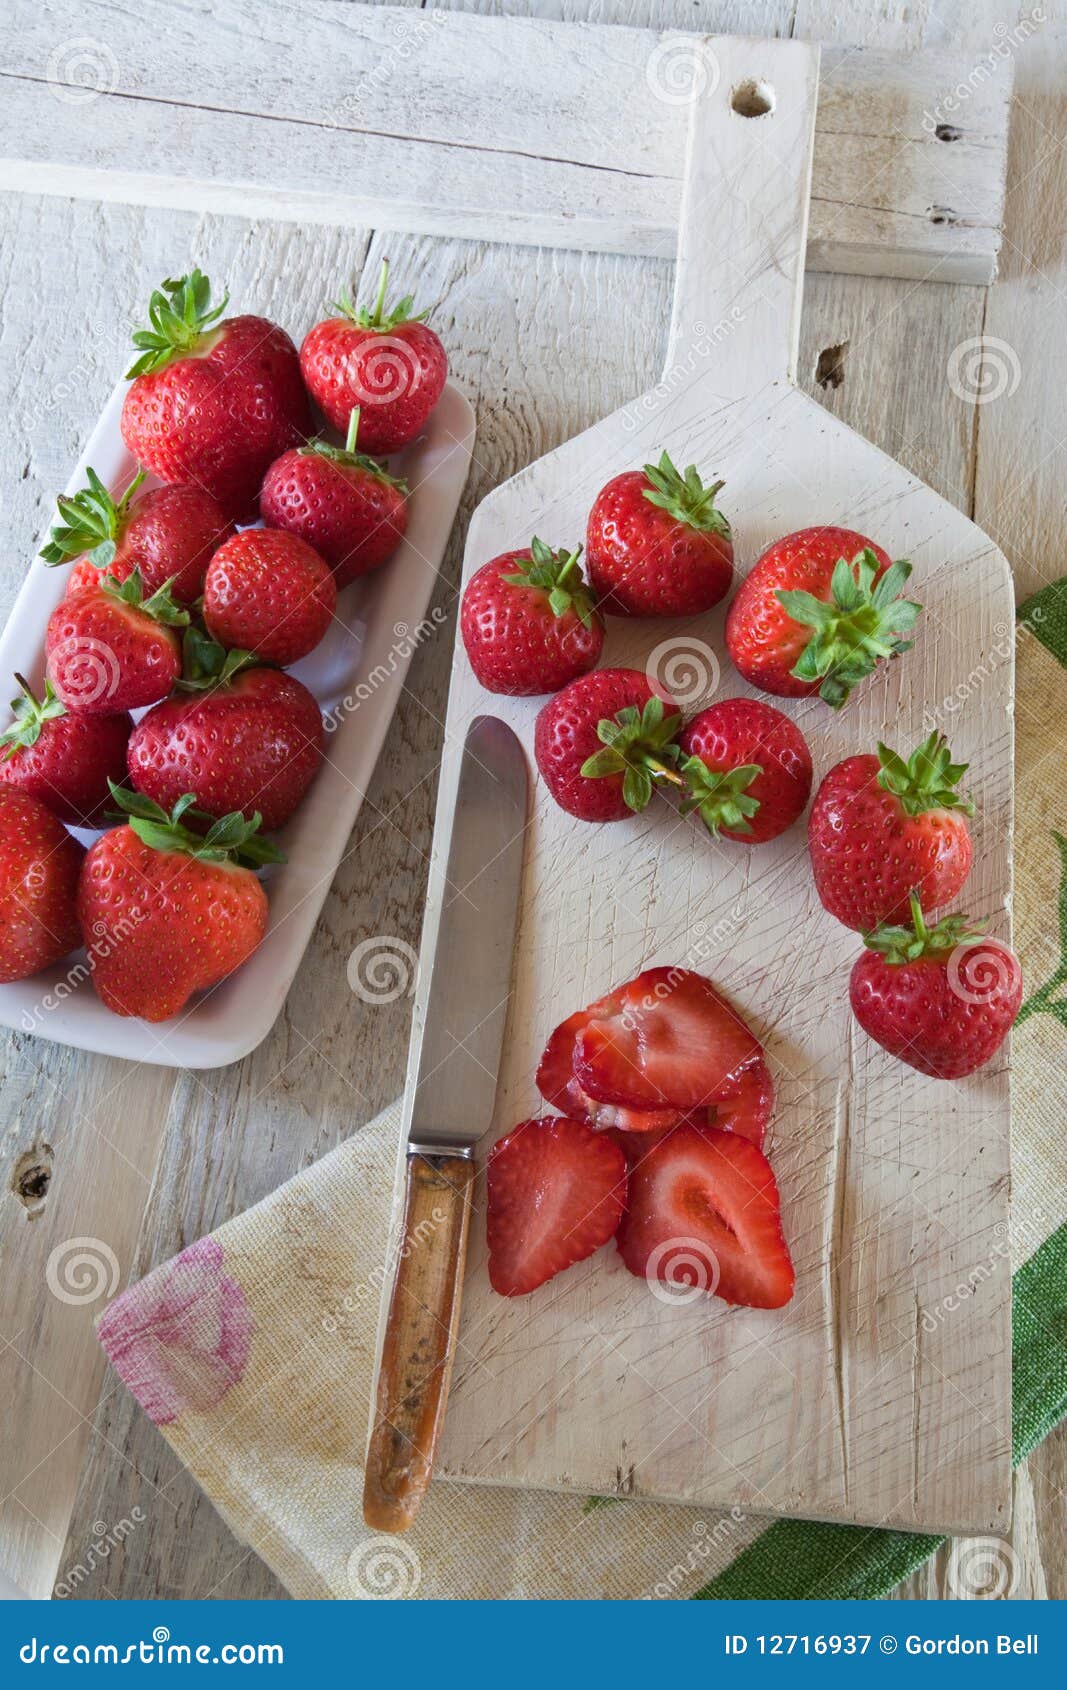 Fresas rebanadas en una tajadera. Fresas rebanadas y enteras en una tajadera blanca con un cuchillo viejo